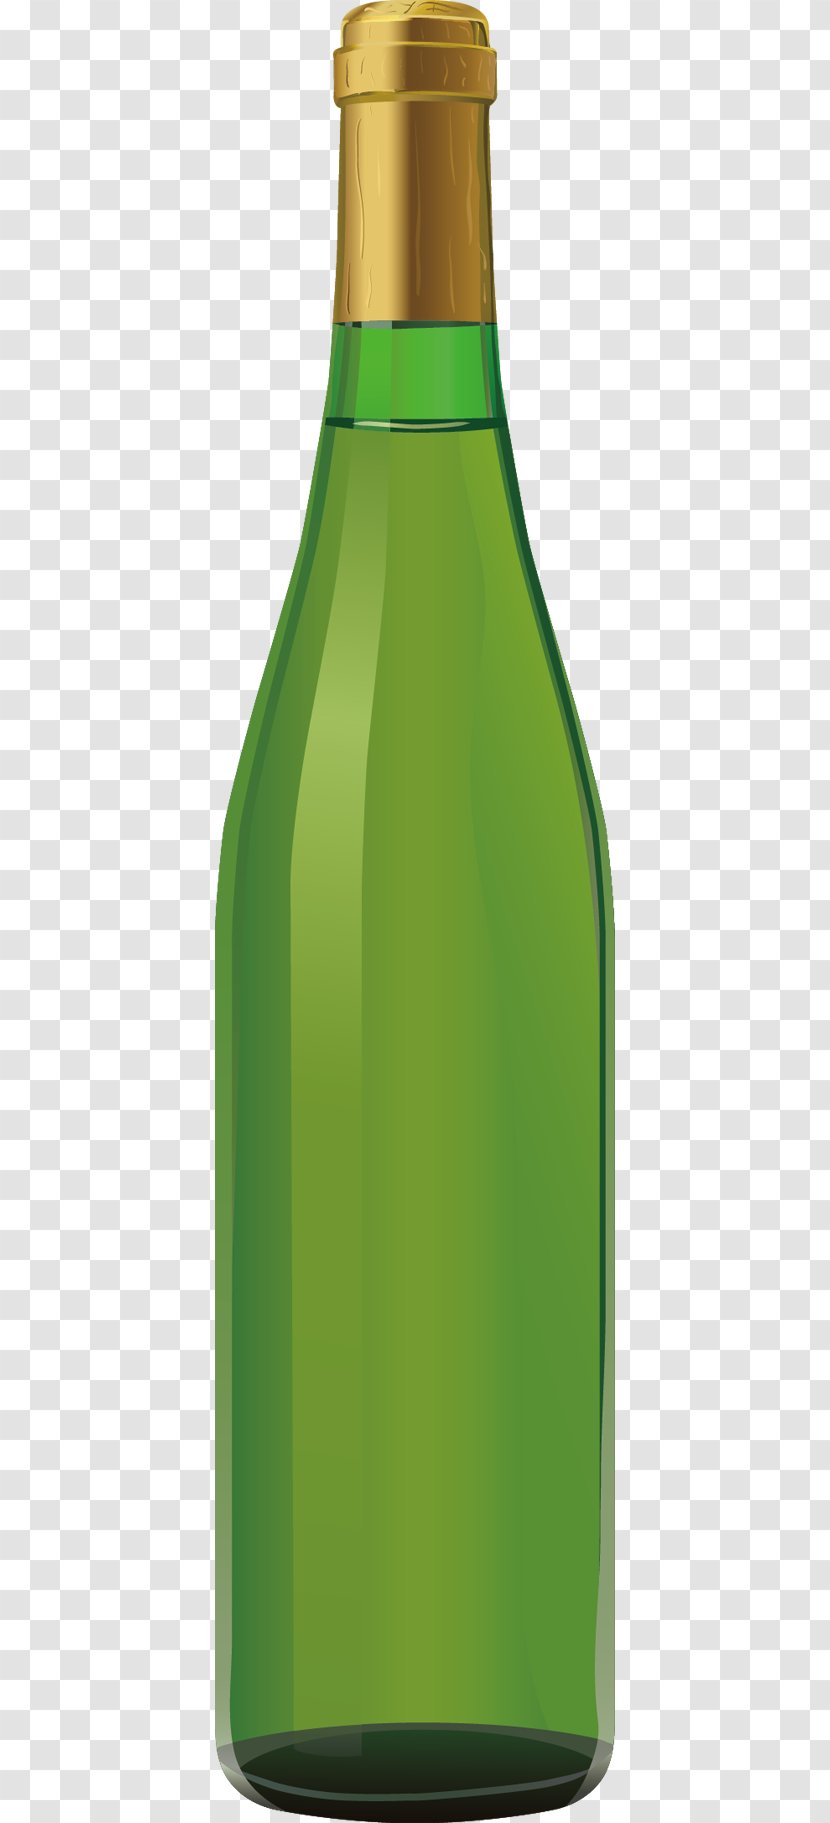 Beer Bottle Champagne Glass - Gratis Transparent PNG